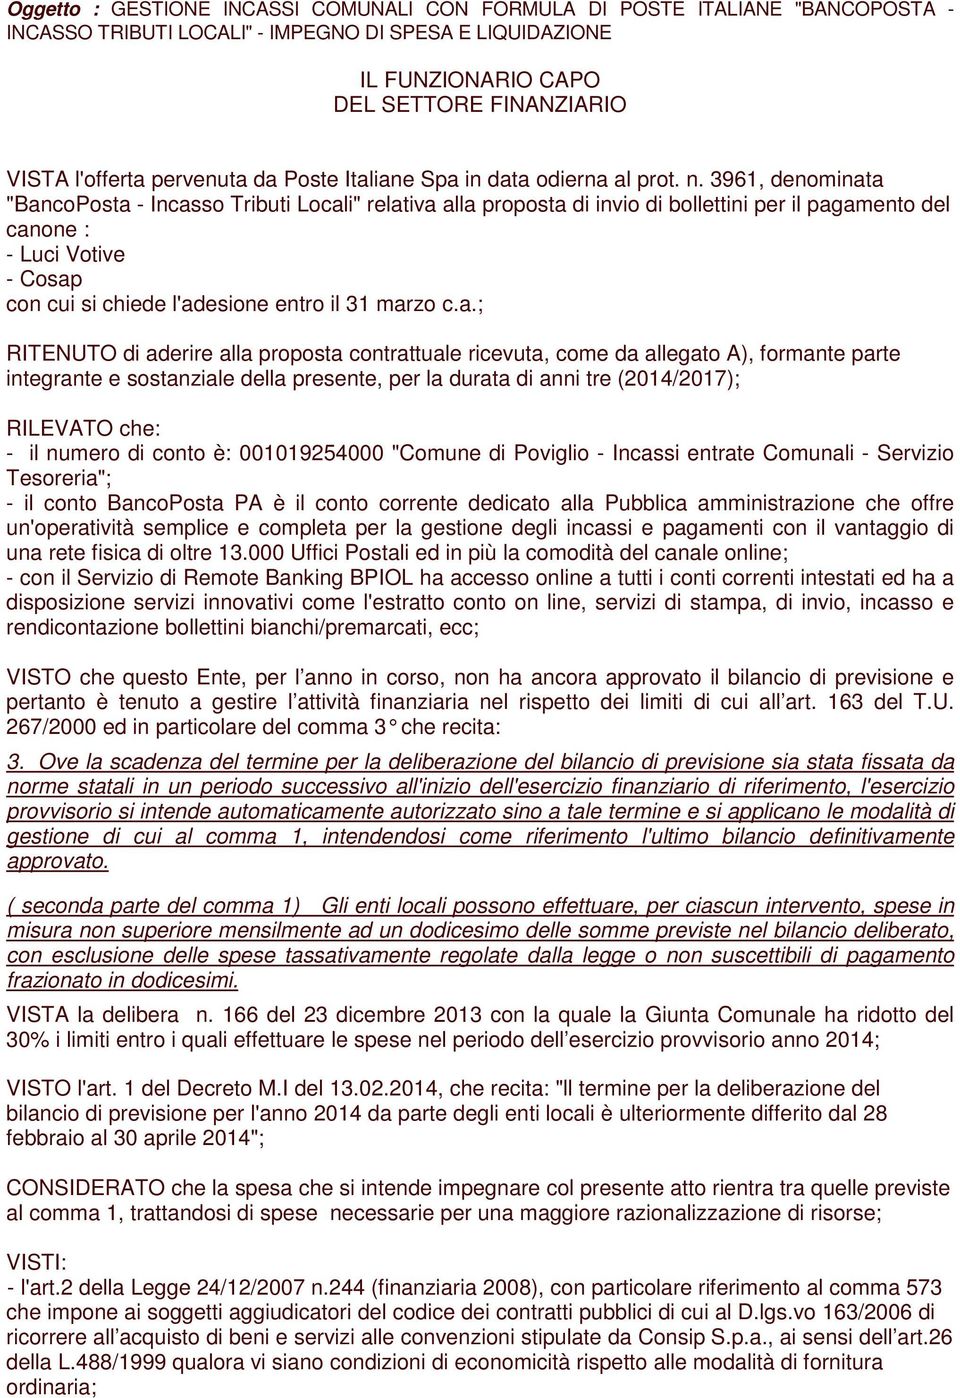 3961, denominata "BancoPosta - Incasso Tributi Locali" relativa alla proposta di invio di bollettini per il pagamento del canone : - Luci Votive - Cosap con cui si chiede l'adesione entro il 31 marzo